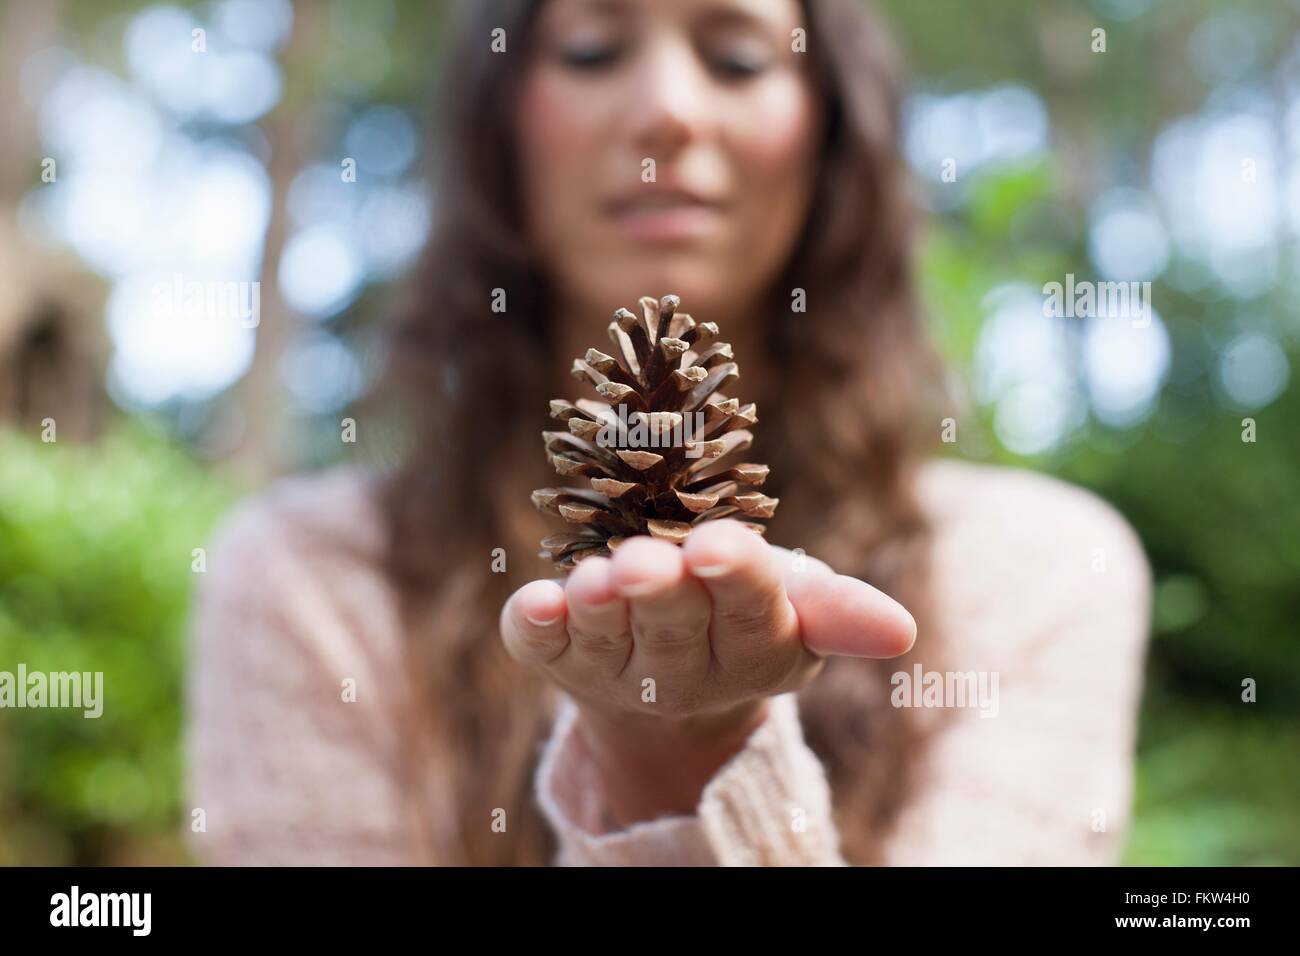 Messa a fuoco poco profonda della donna tenendo cono di pino a portata di mano Foto Stock